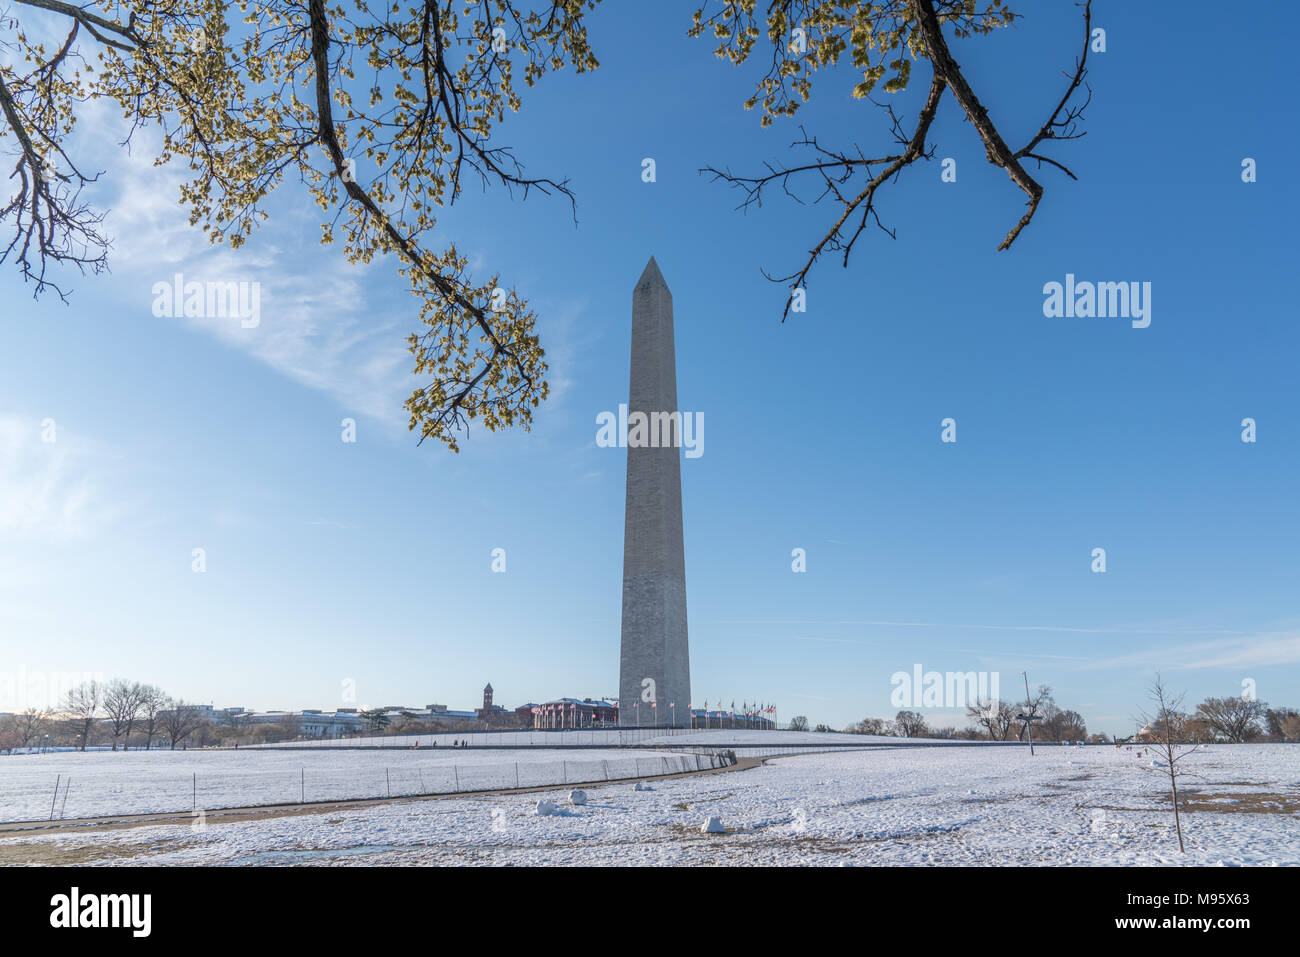 Il Monumento di Washington è un obelisco sul National Mall di Washington D.C., costruita per commemorare George Washington. Foto Stock